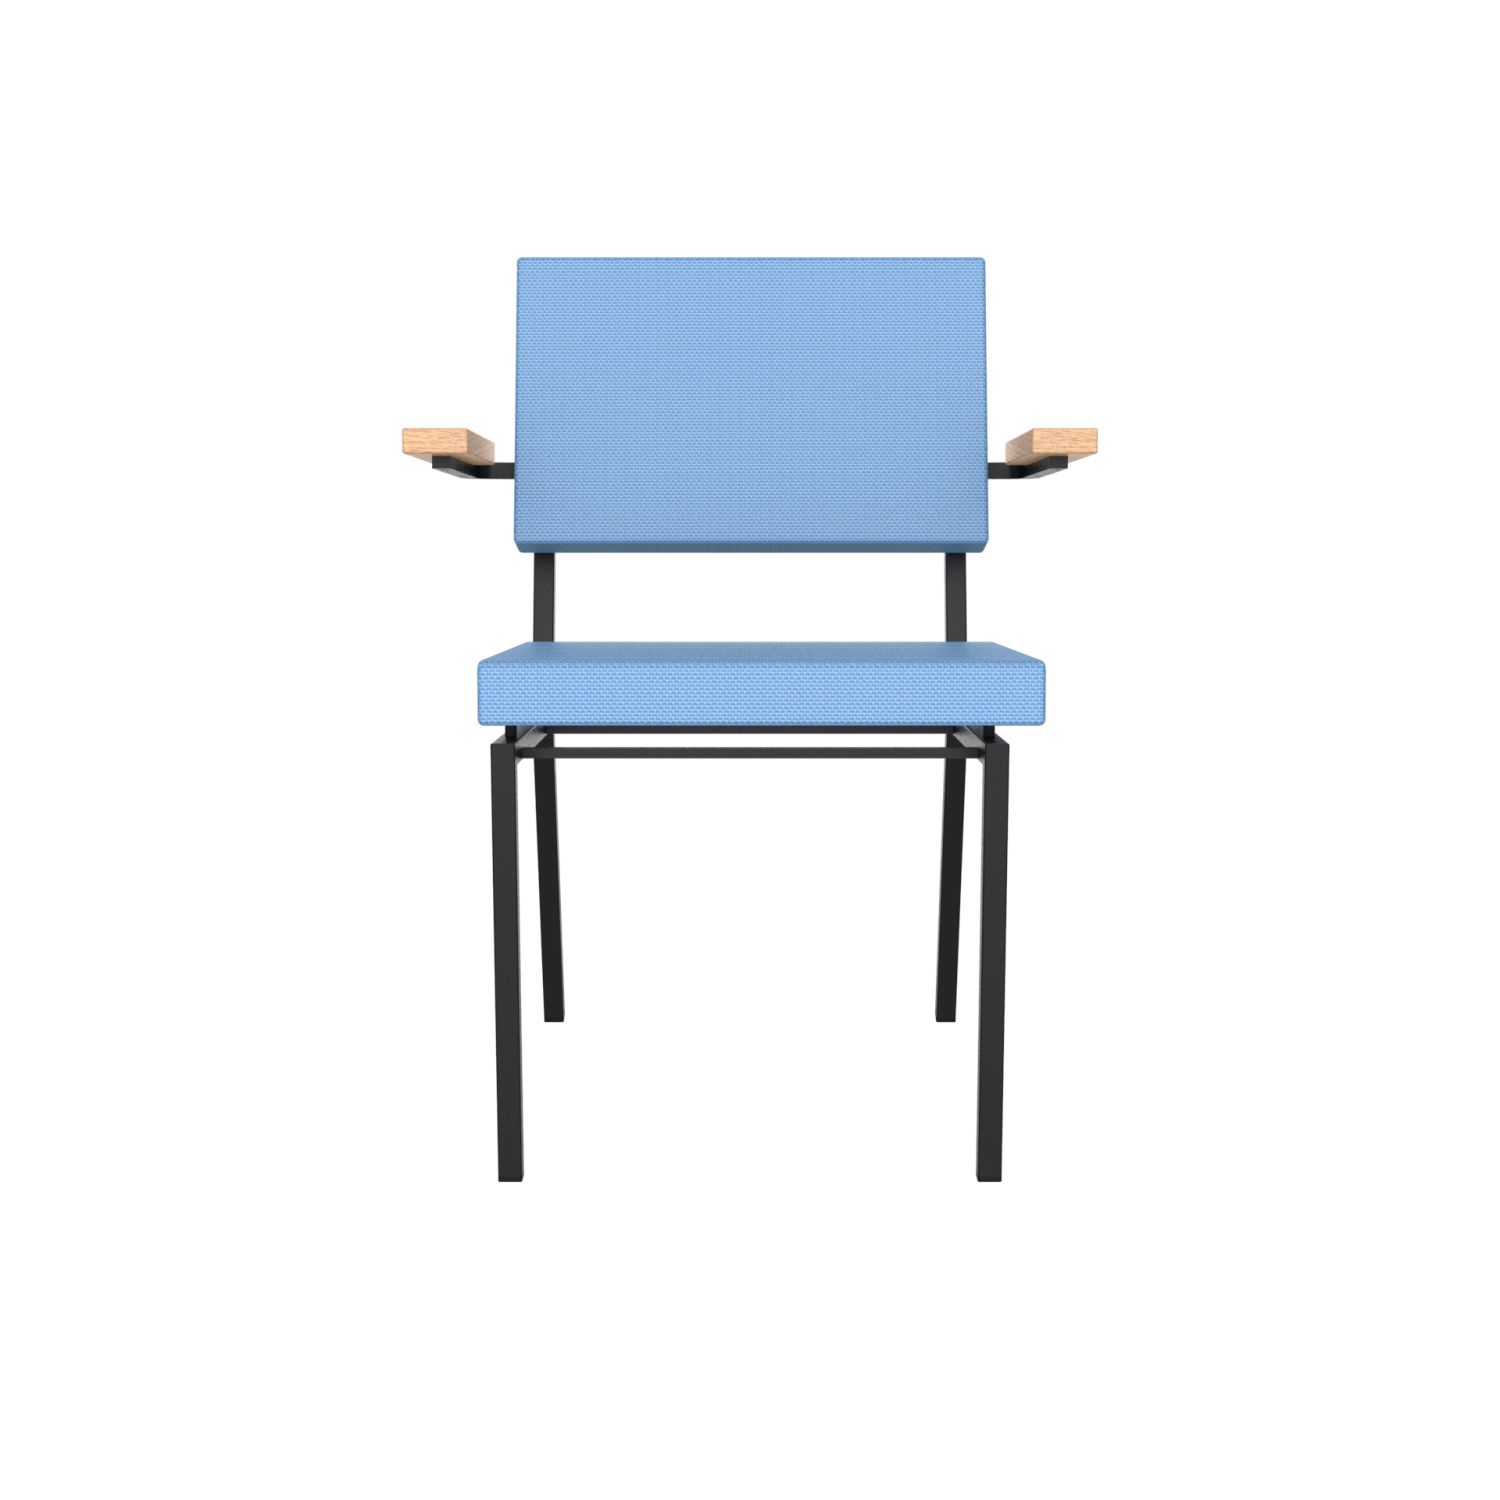 lensvelt gerrit veenendaal chair with armrests blue horizon 040 price level 1 black frame ral9005 hard leg ends